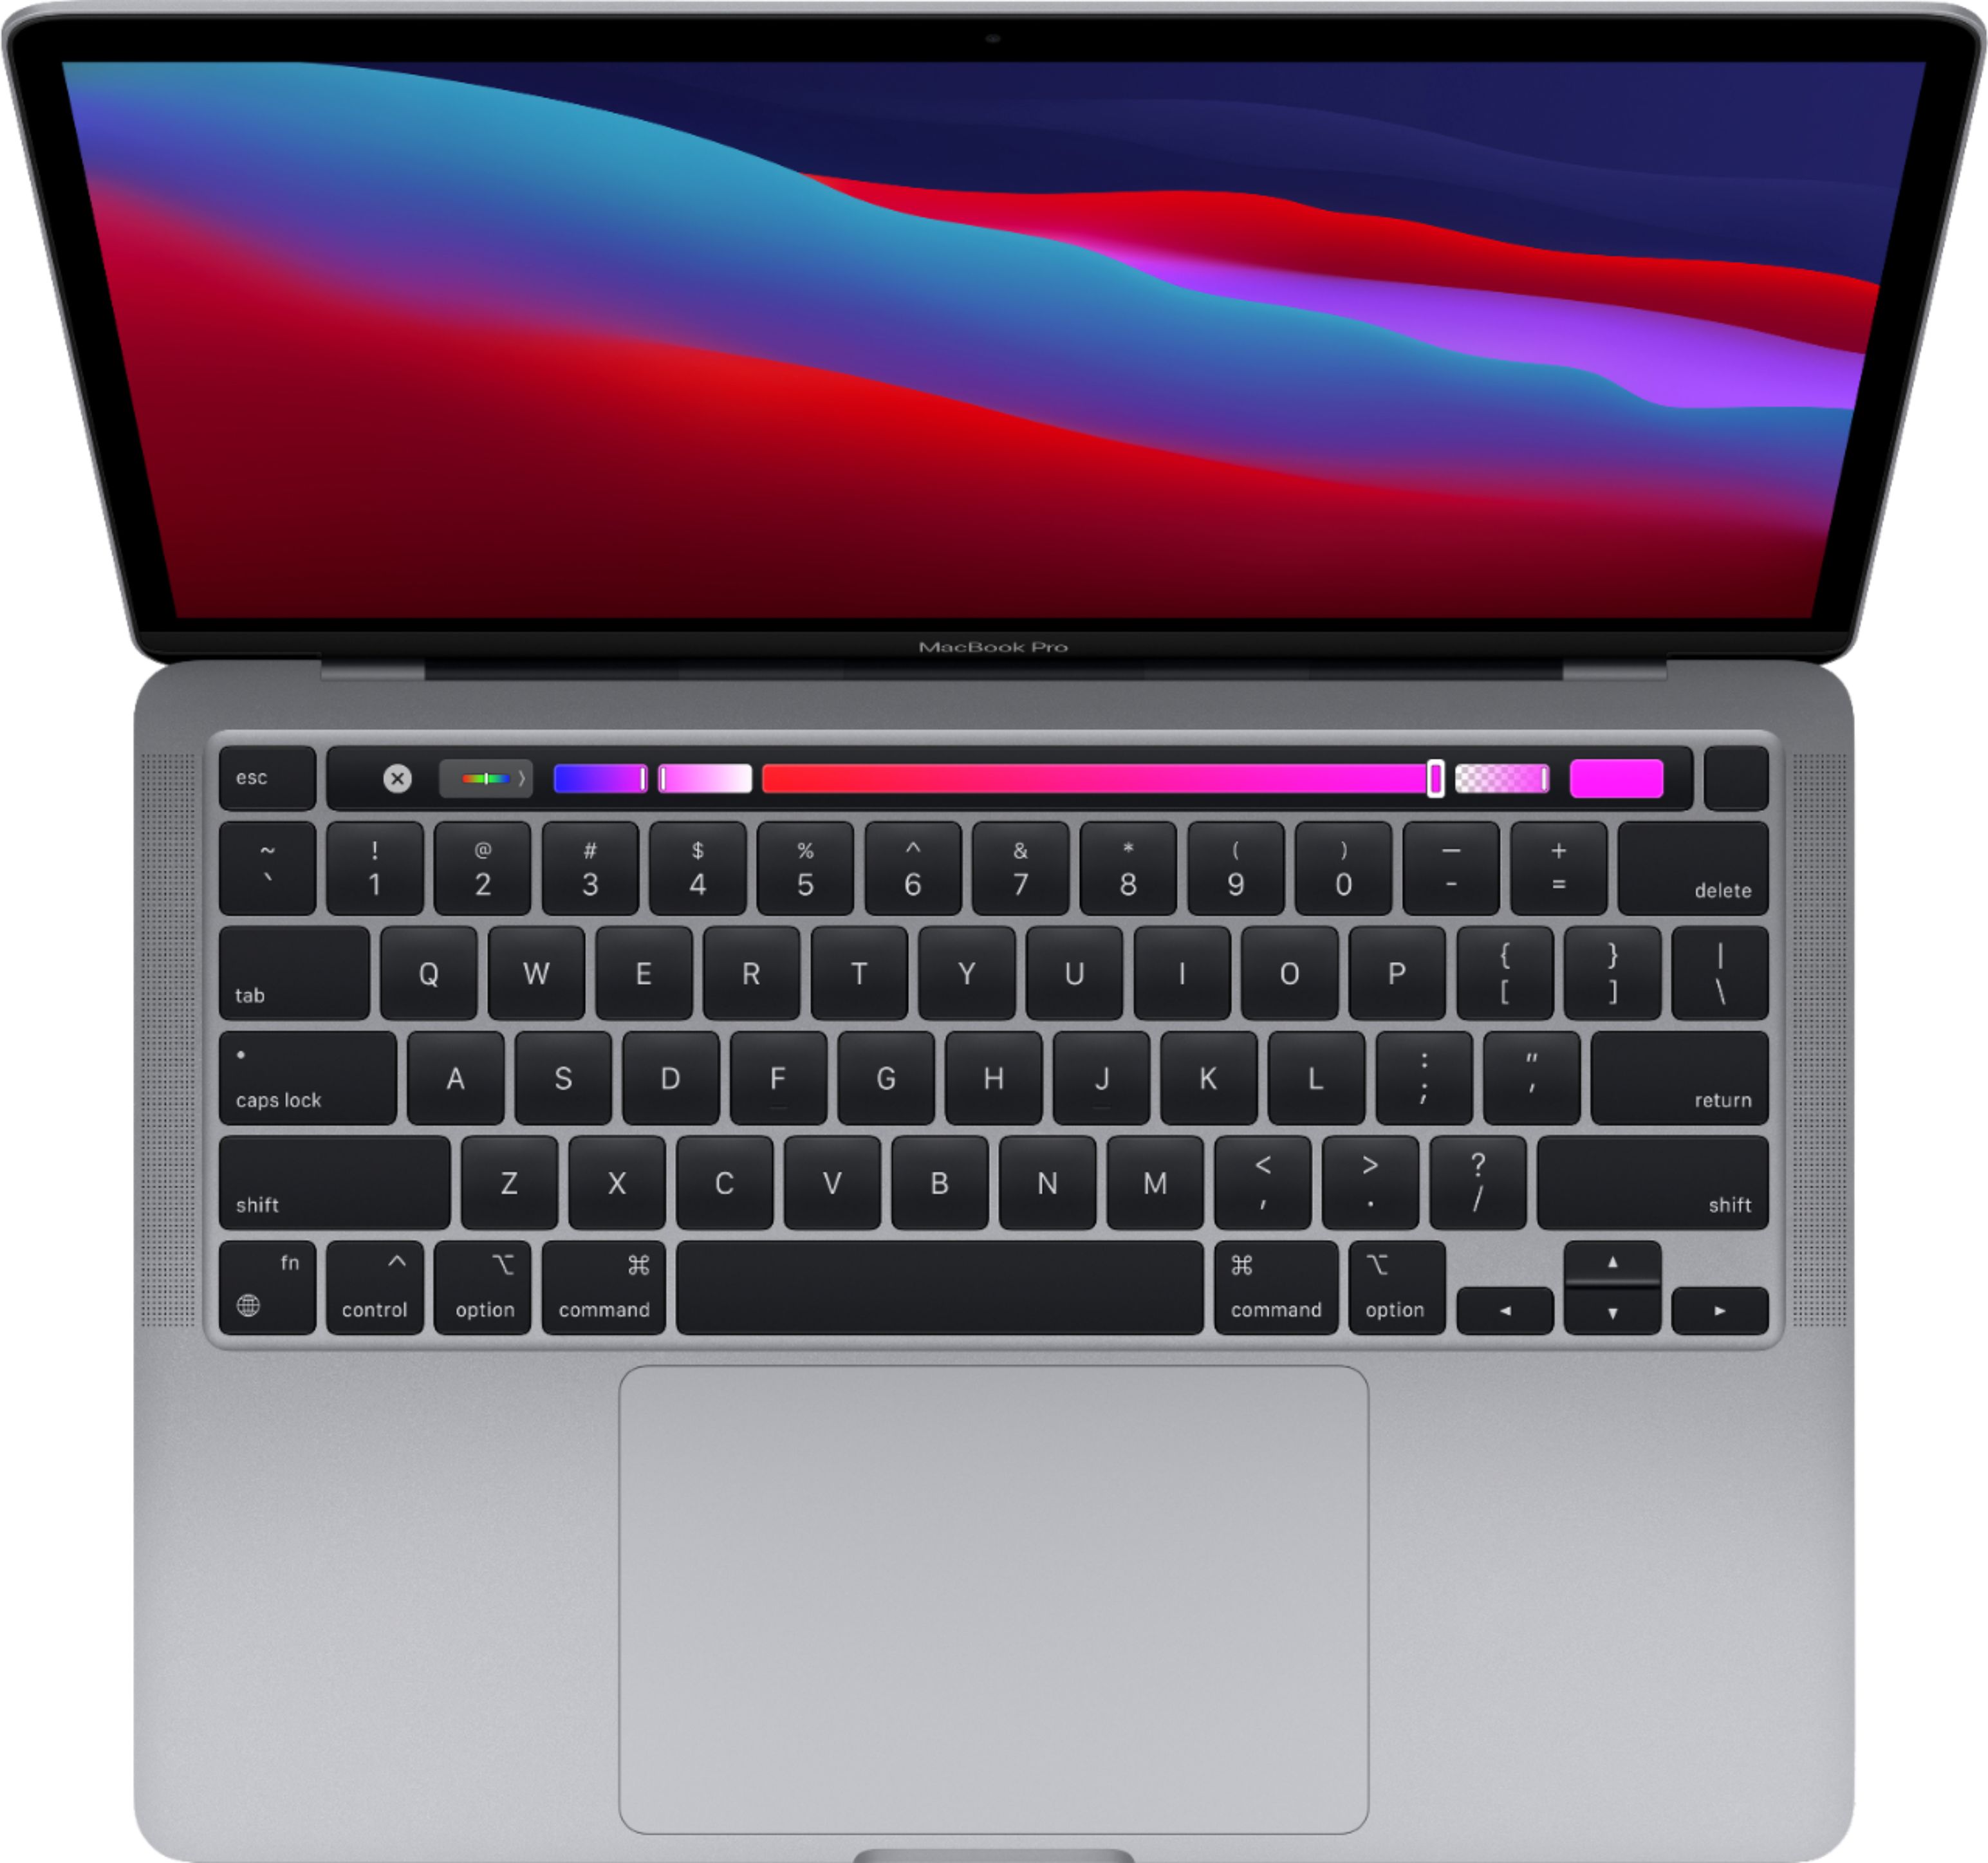 macbook pro 13 inch retina display best buy